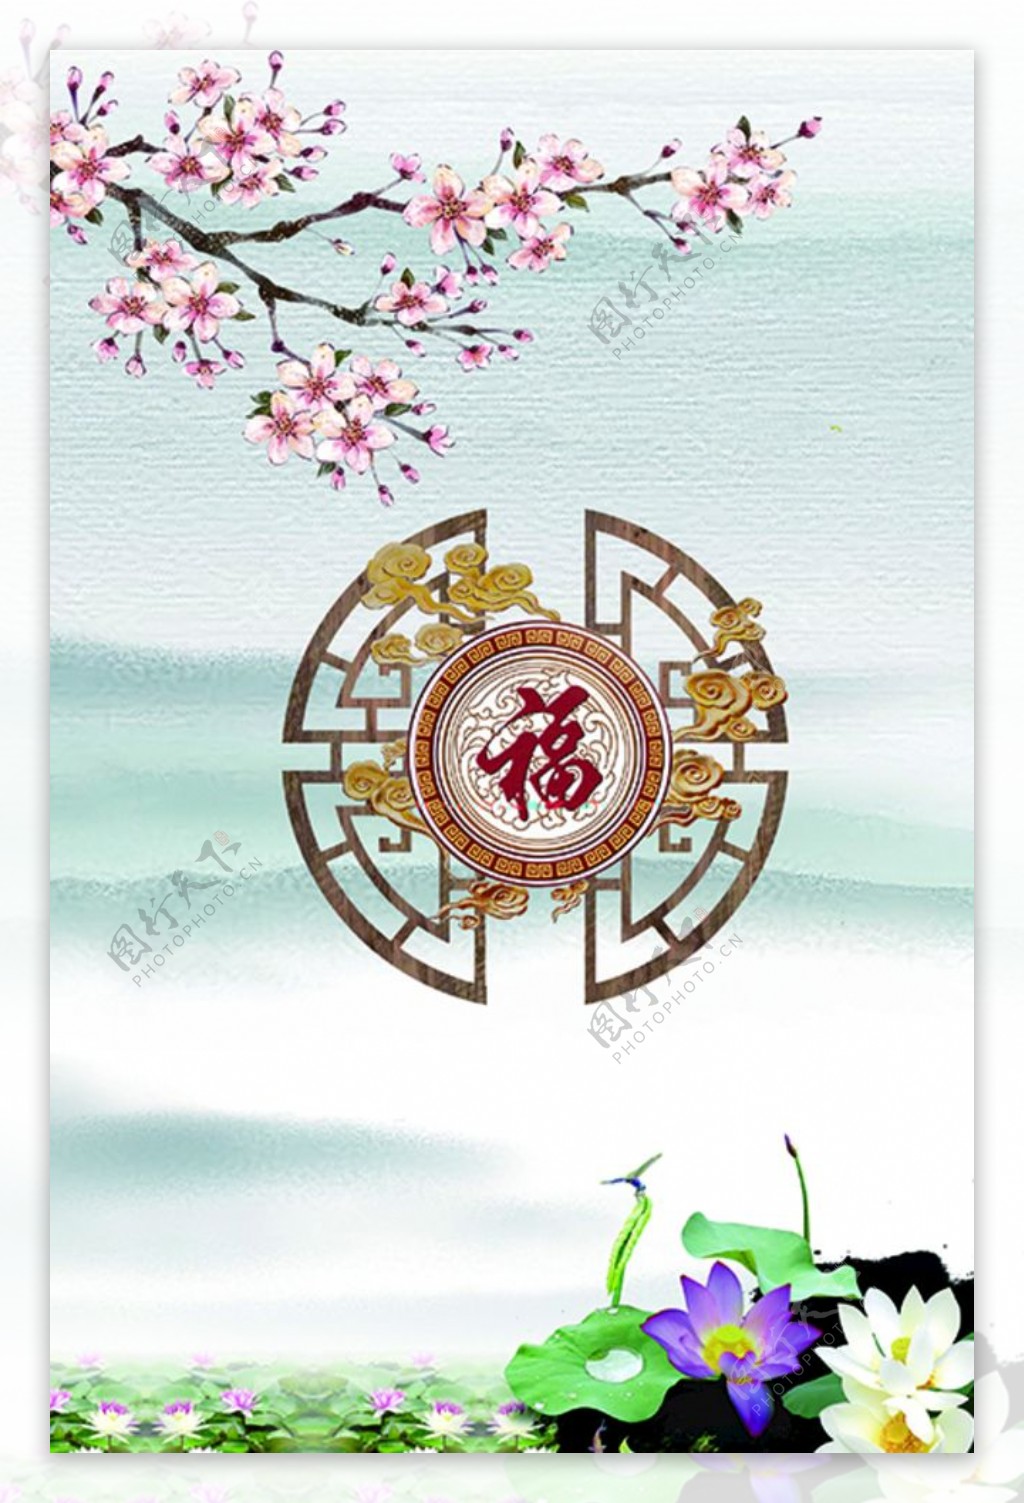 中式古典装饰画图片